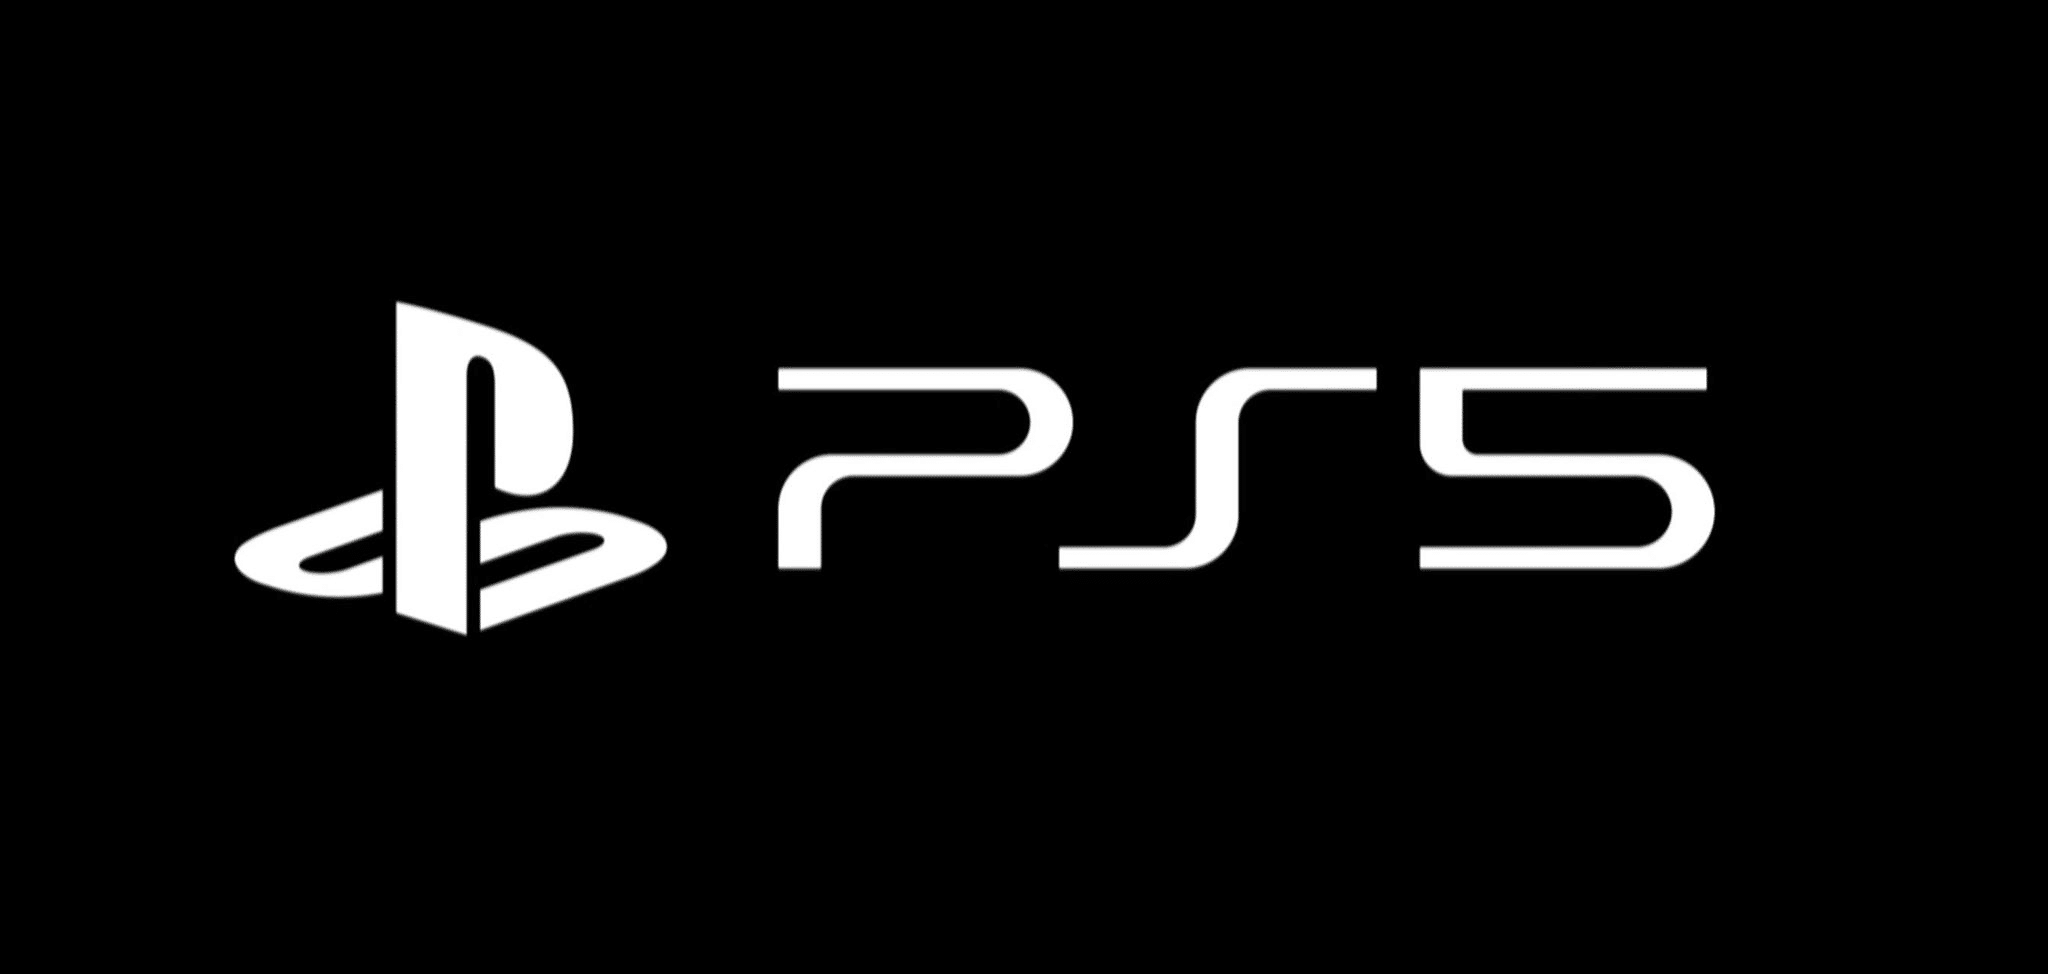 Marca do PS5 é foto relacionada a games mais popular do Instagram